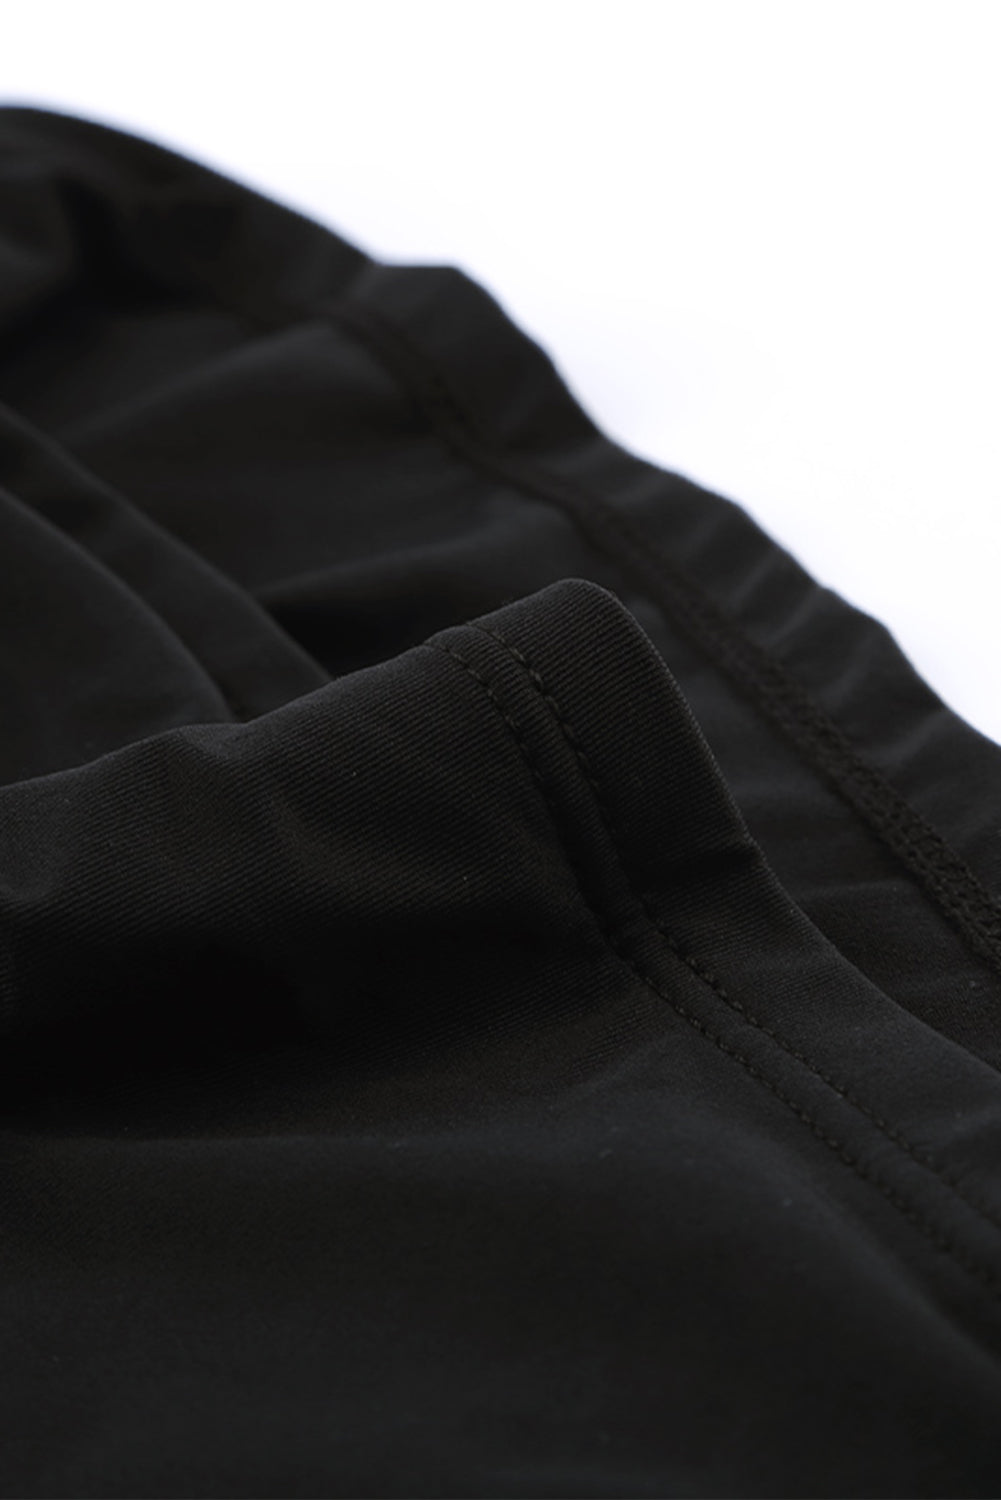 Crni kupaći kostim tankini s visokim izrezom i dubokim izrezom